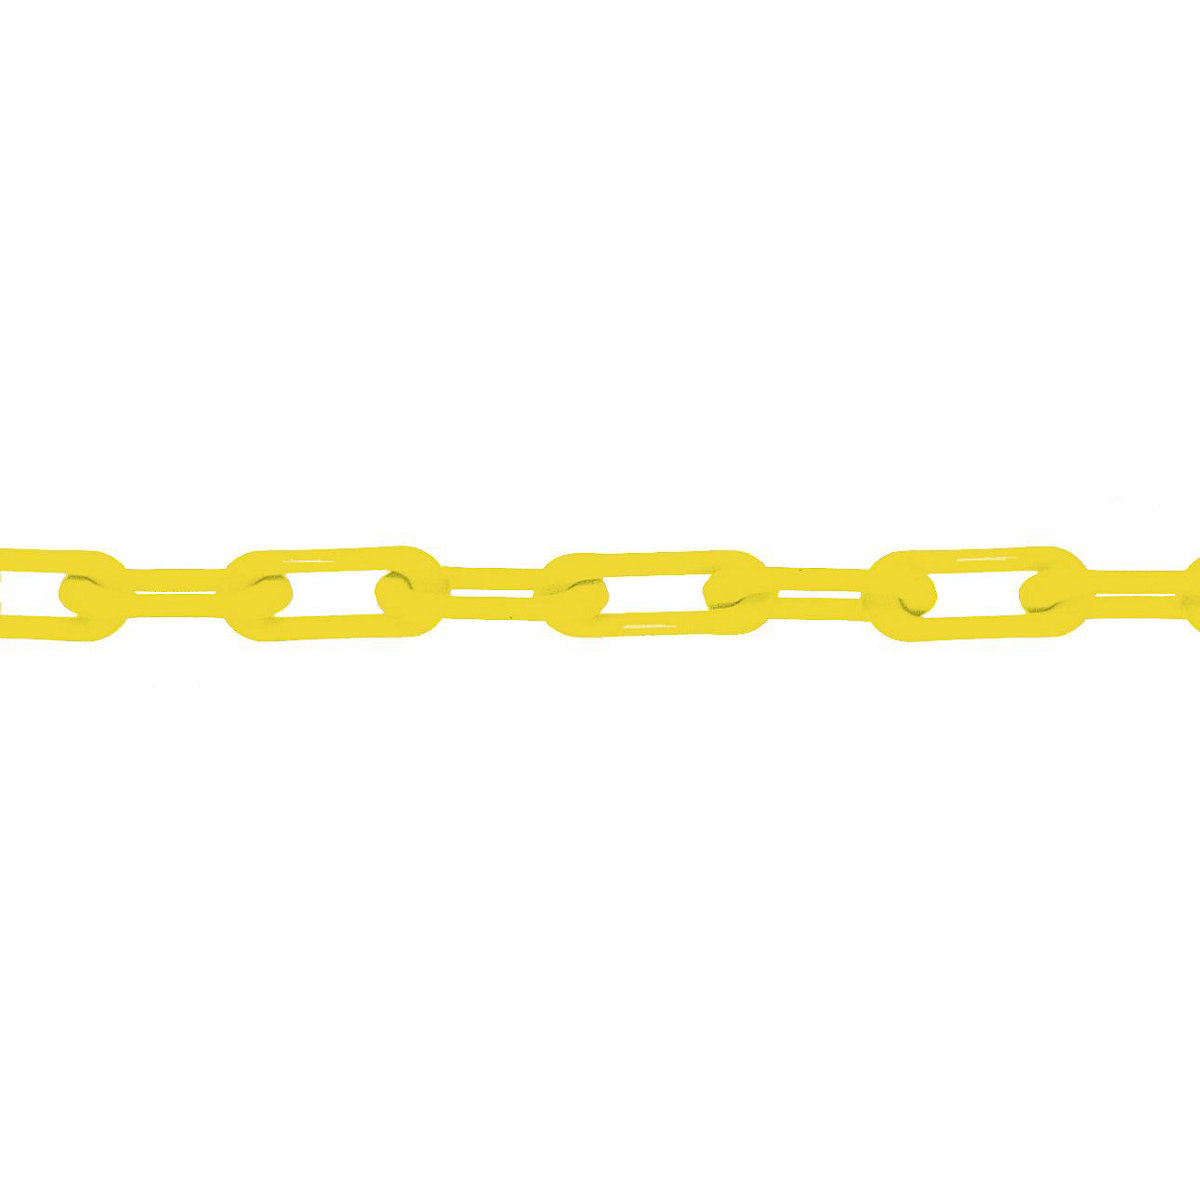 Łańcuch z nylonu, jakość MNK 6, dł. wiązki 50 m, żółty-6